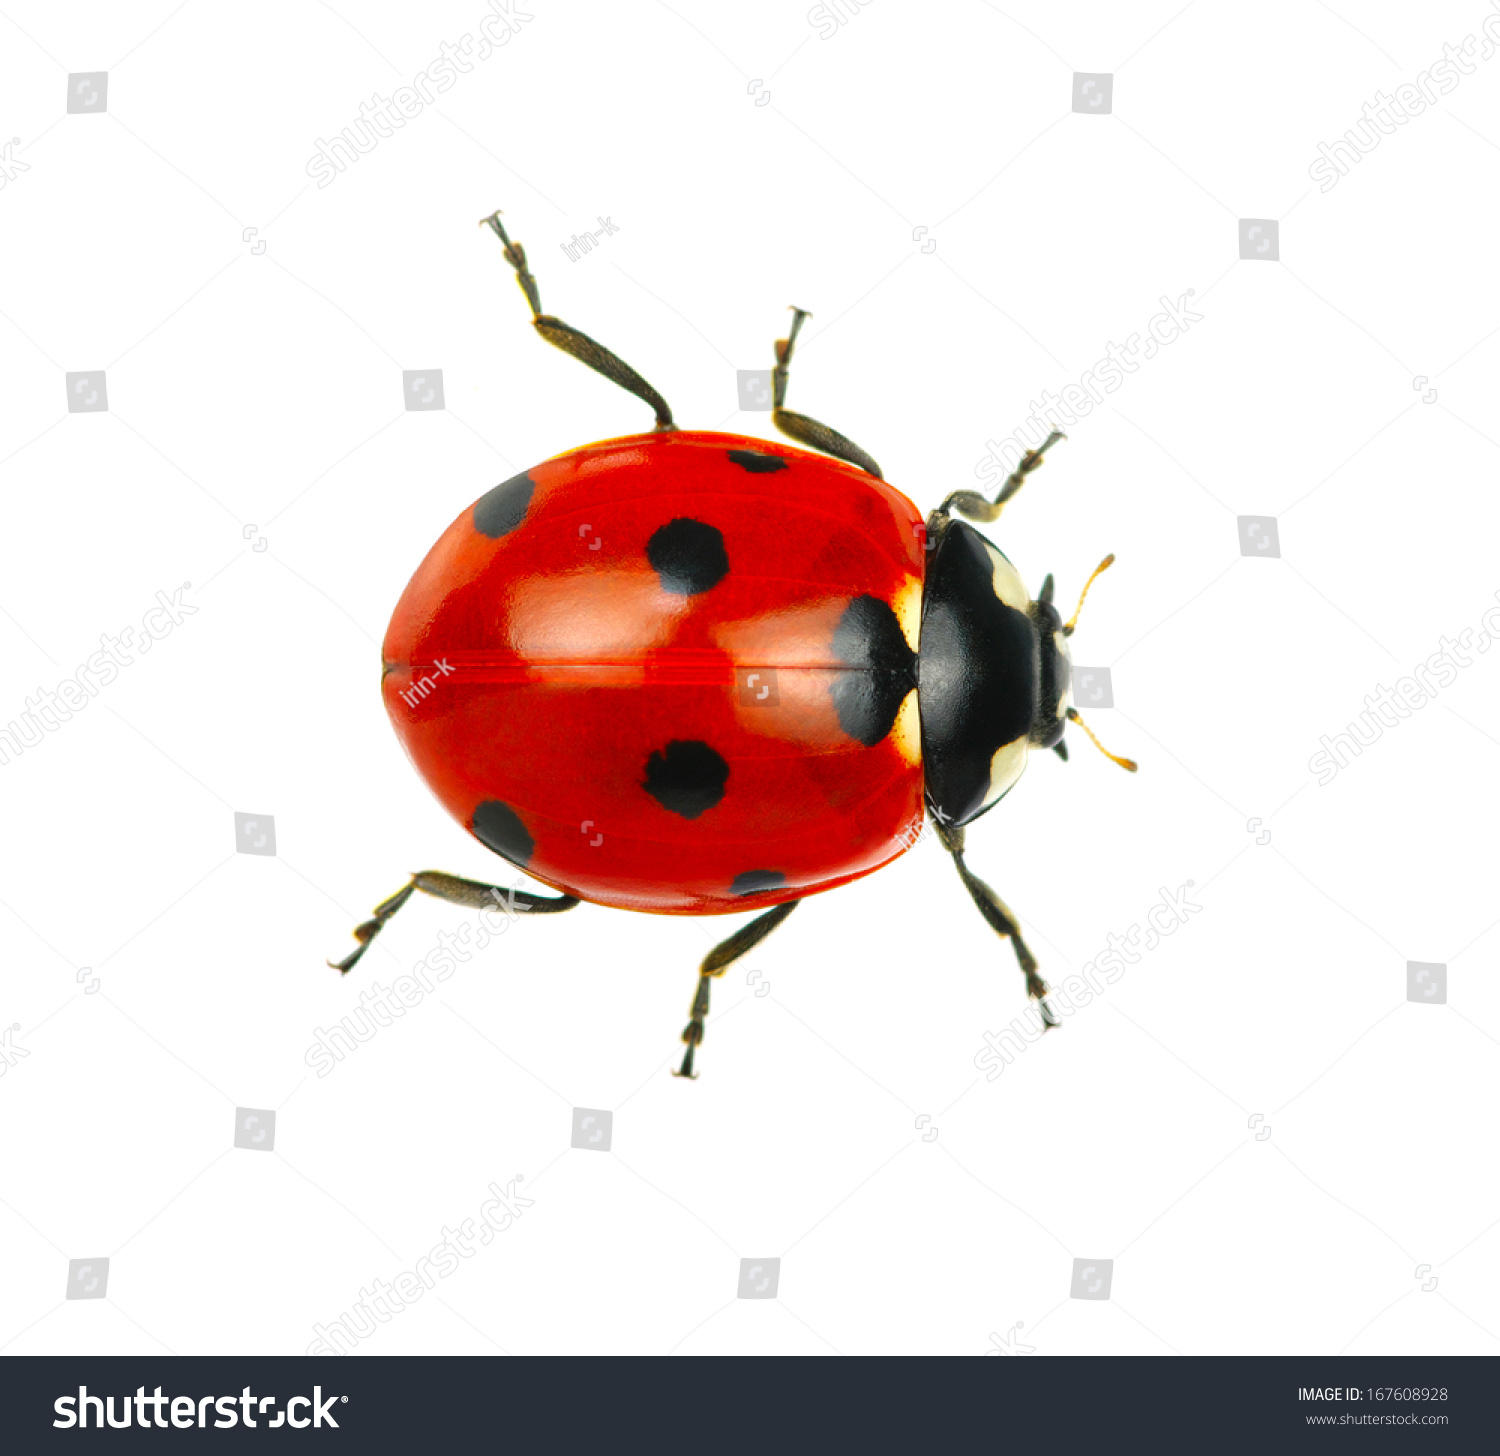  Ladybug isolated on white background #167608928